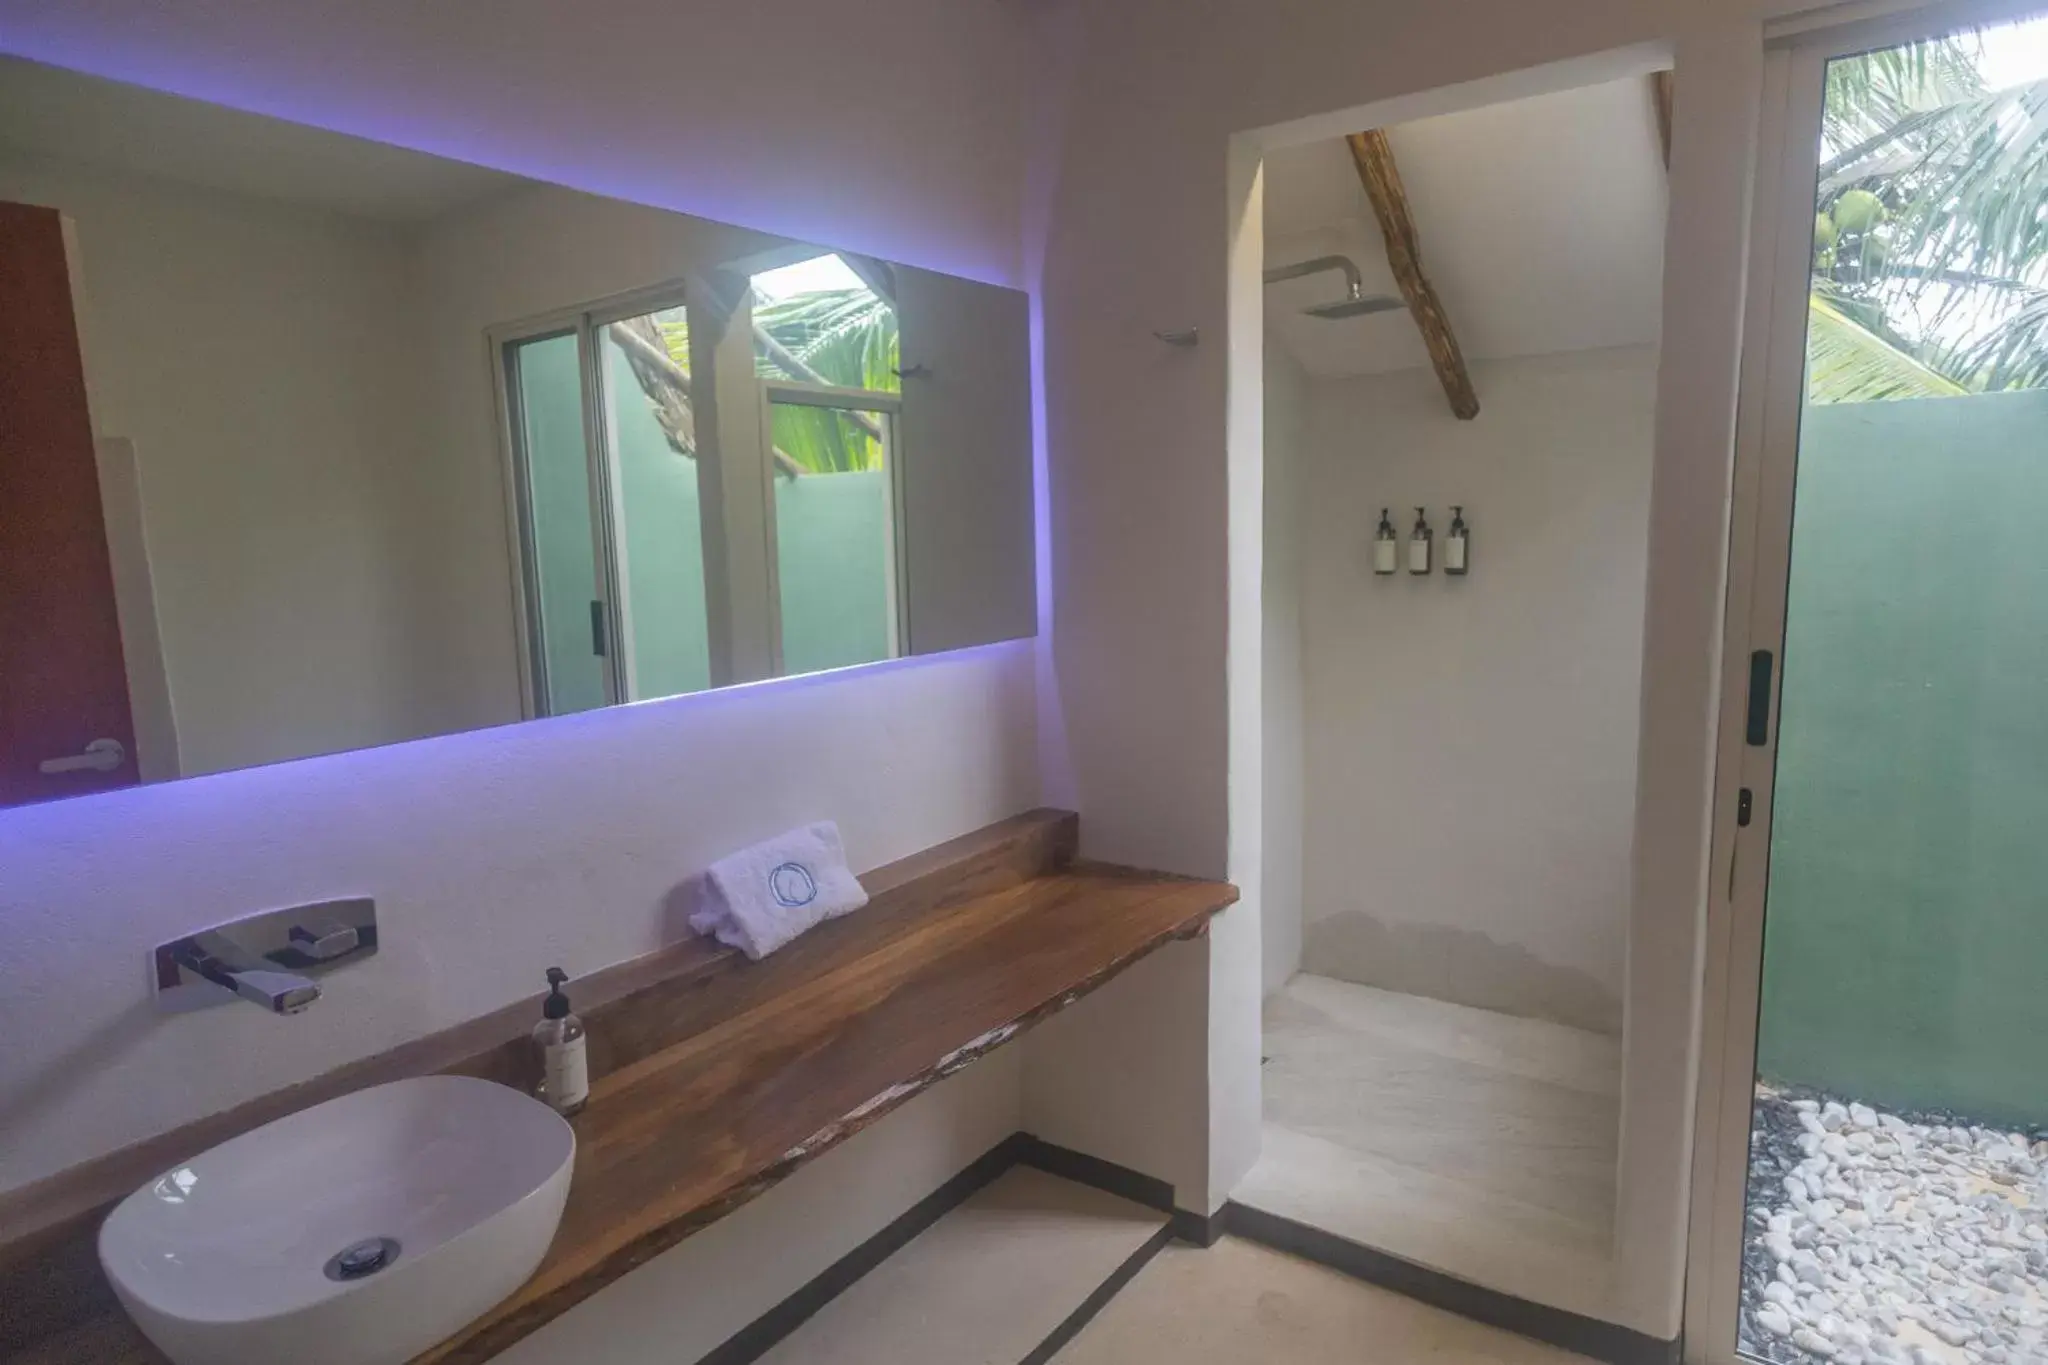 Bathroom in Hotel Circulo Bacalar